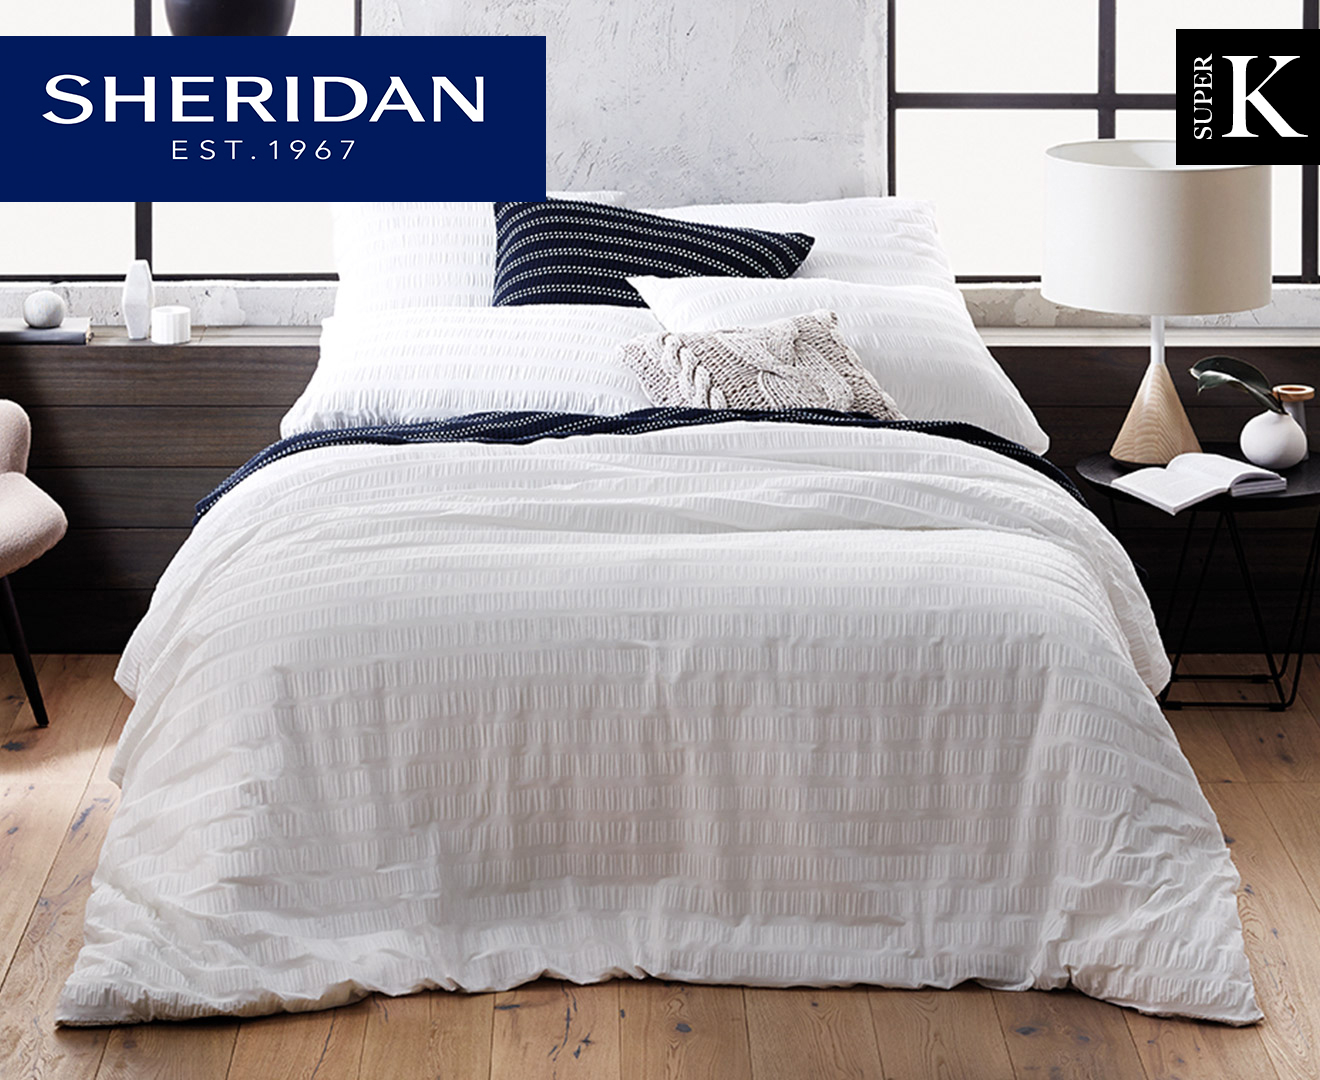 Sheridan Beldon Super King Bed Quilt Cover Set - White